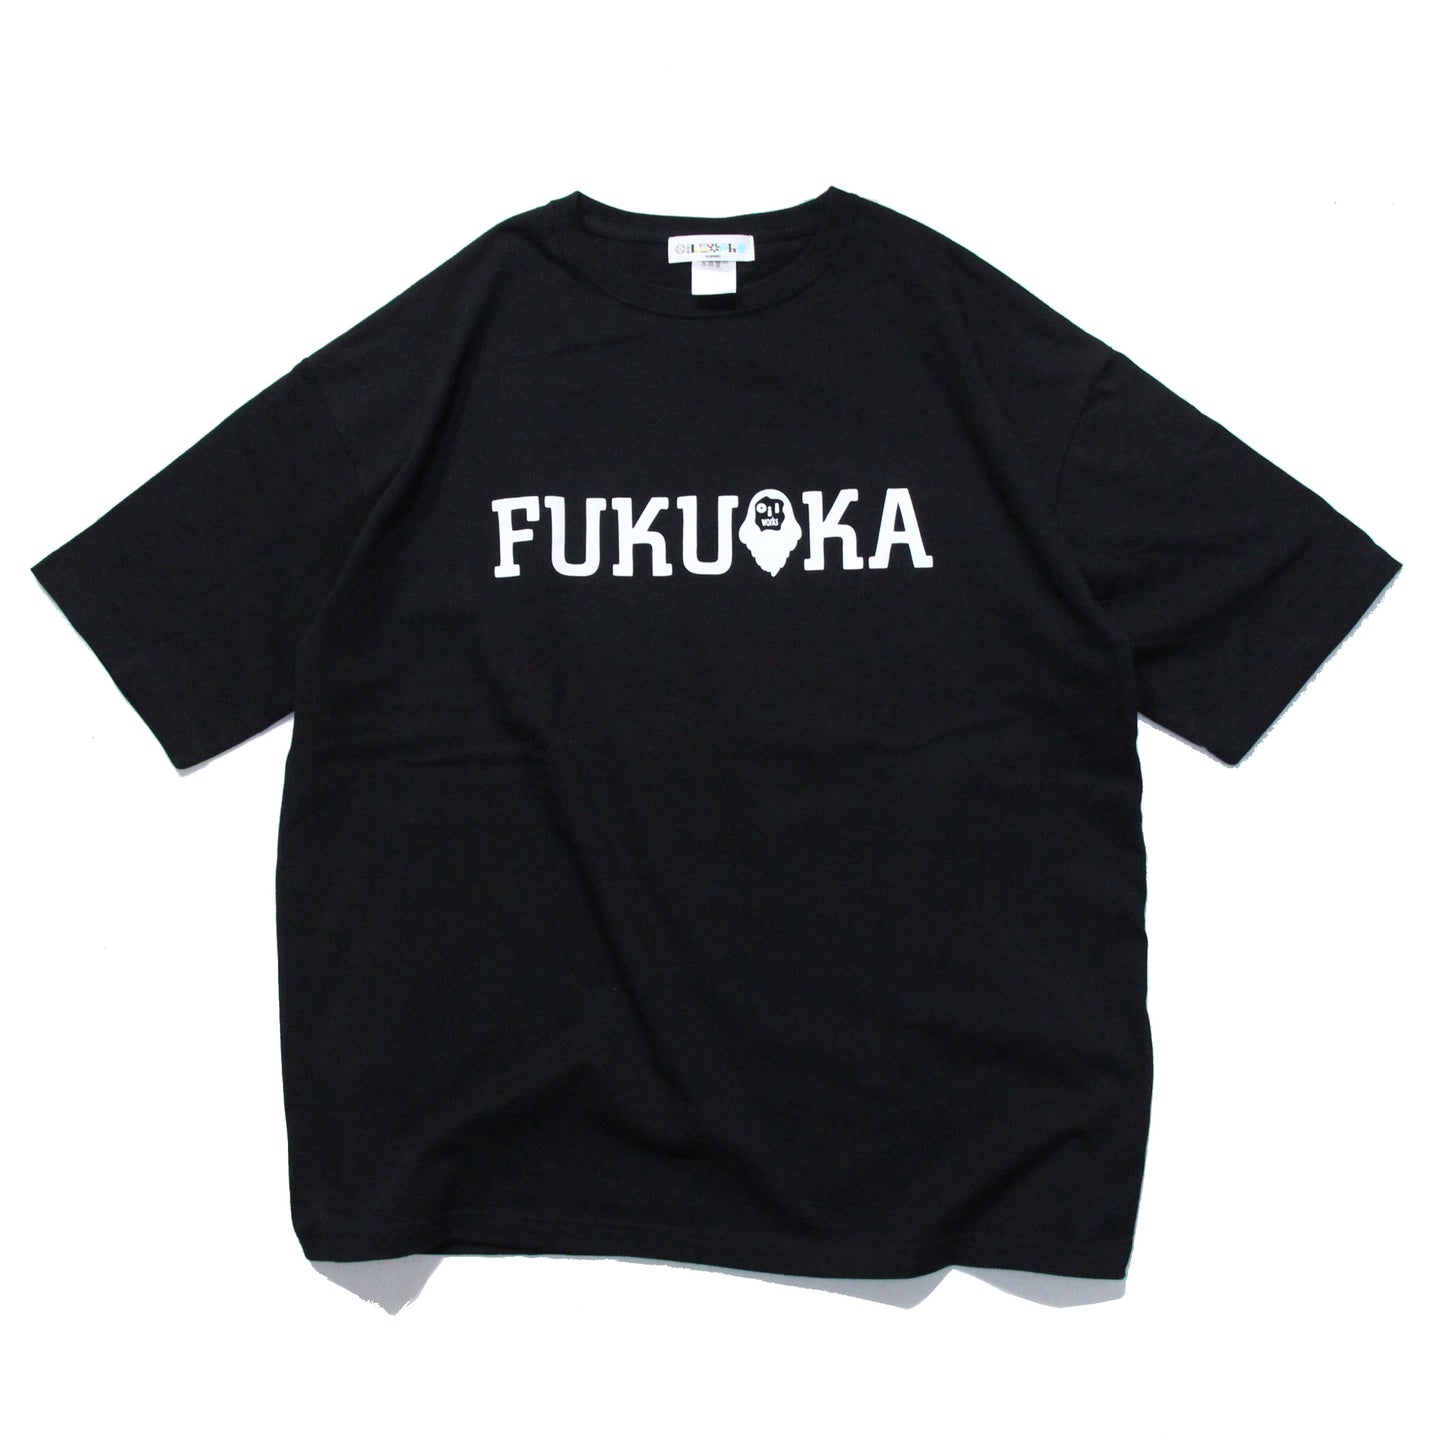 FUKUOKA OIL T-SHIRTS